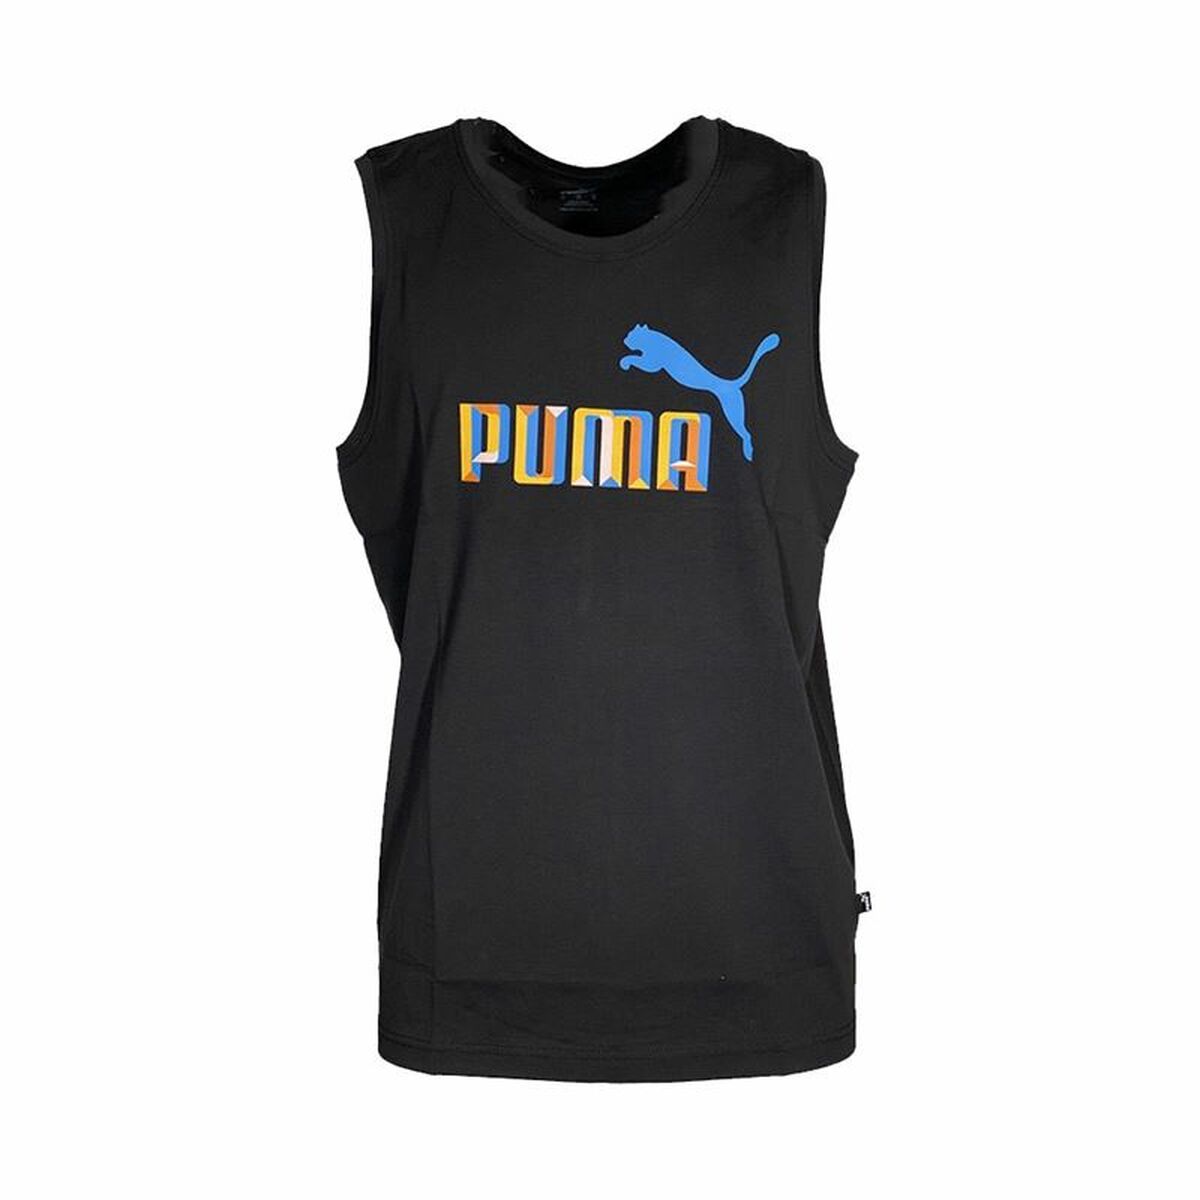 Osta tuote Naisten hihaton paita Puma Bppo-000770 Musta (Koko: XL) verkkokaupastamme Korhone: Urheilu & Vapaa-aika 10% alennuksella koodilla KORHONE